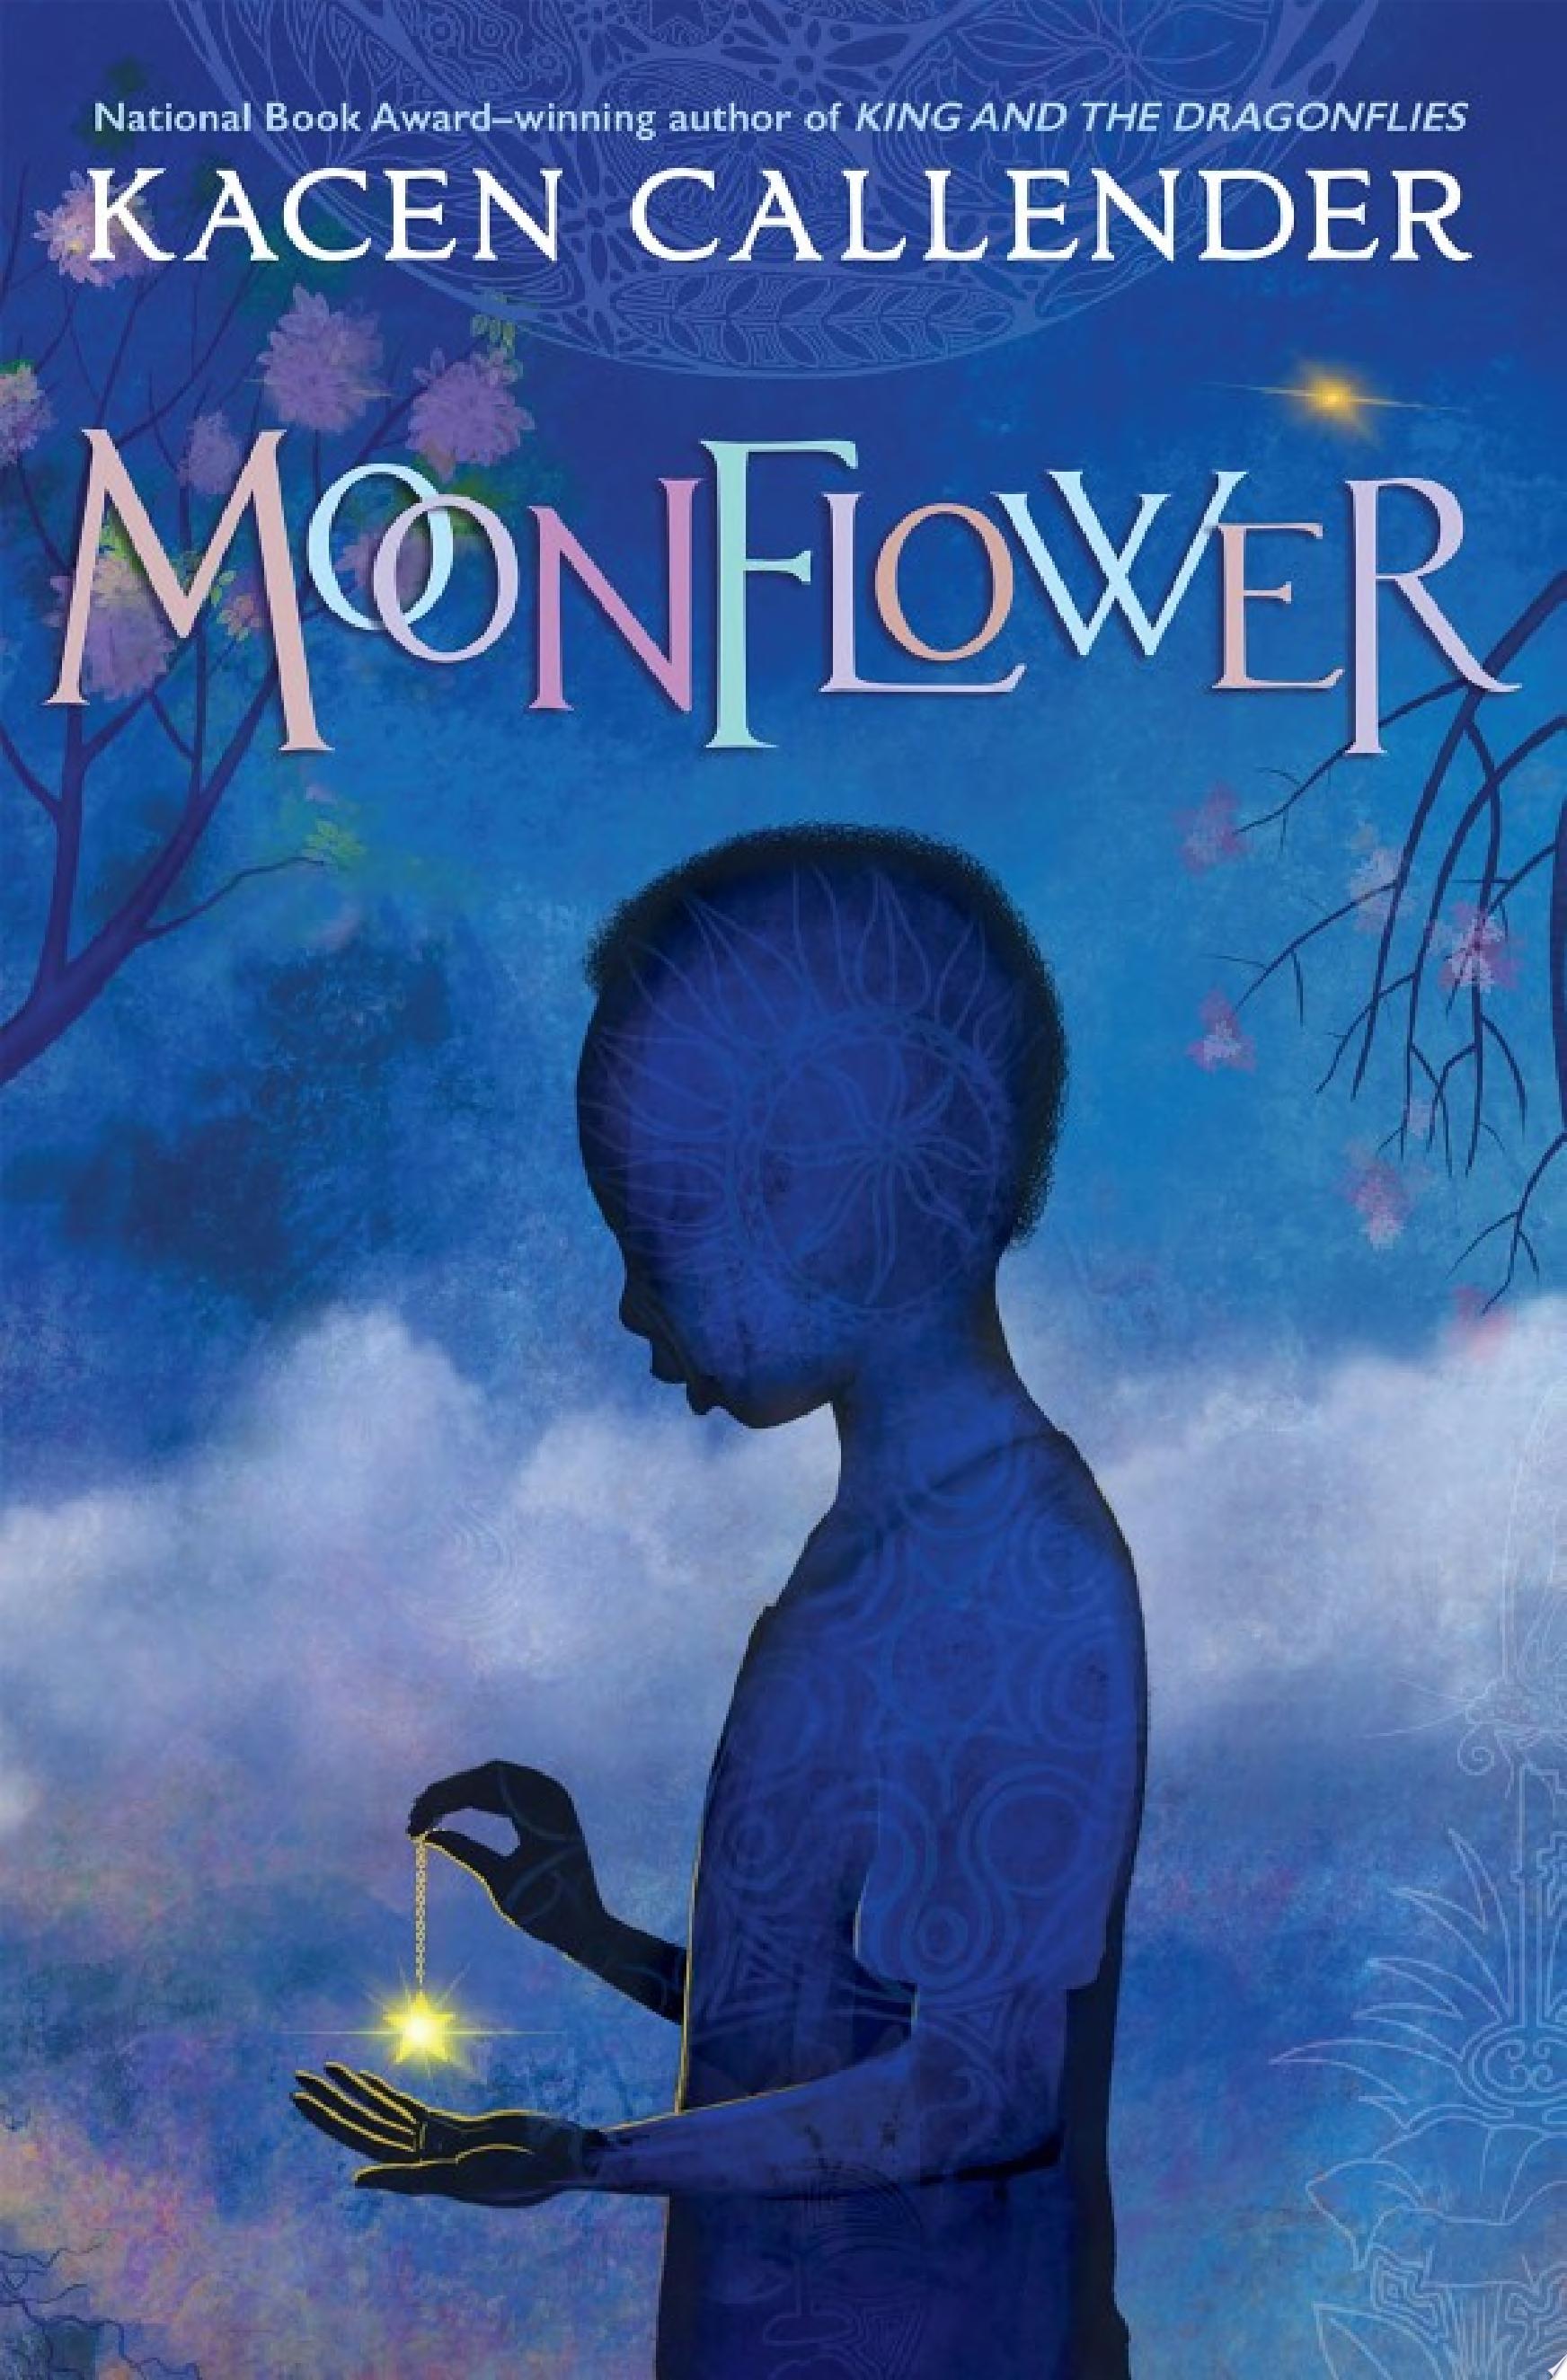 Image for "Moonflower"